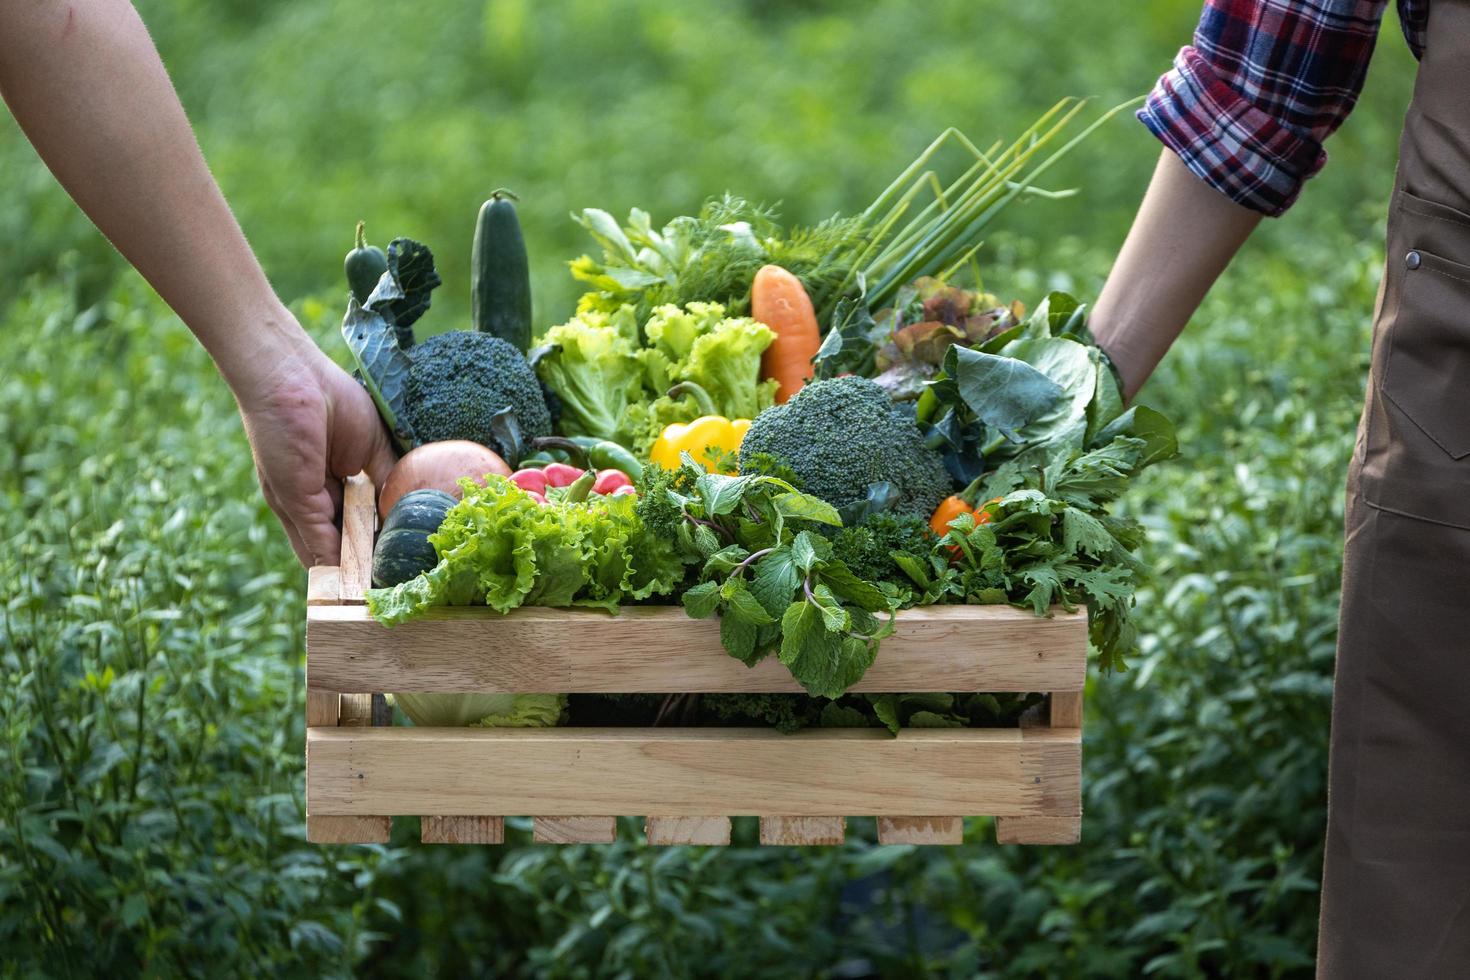 mano de granjeros que llevan la bandeja de madera llena de verduras orgánicas recién recogidas en el jardín para la temporada de cosecha y alimentos dietéticos saludables foto